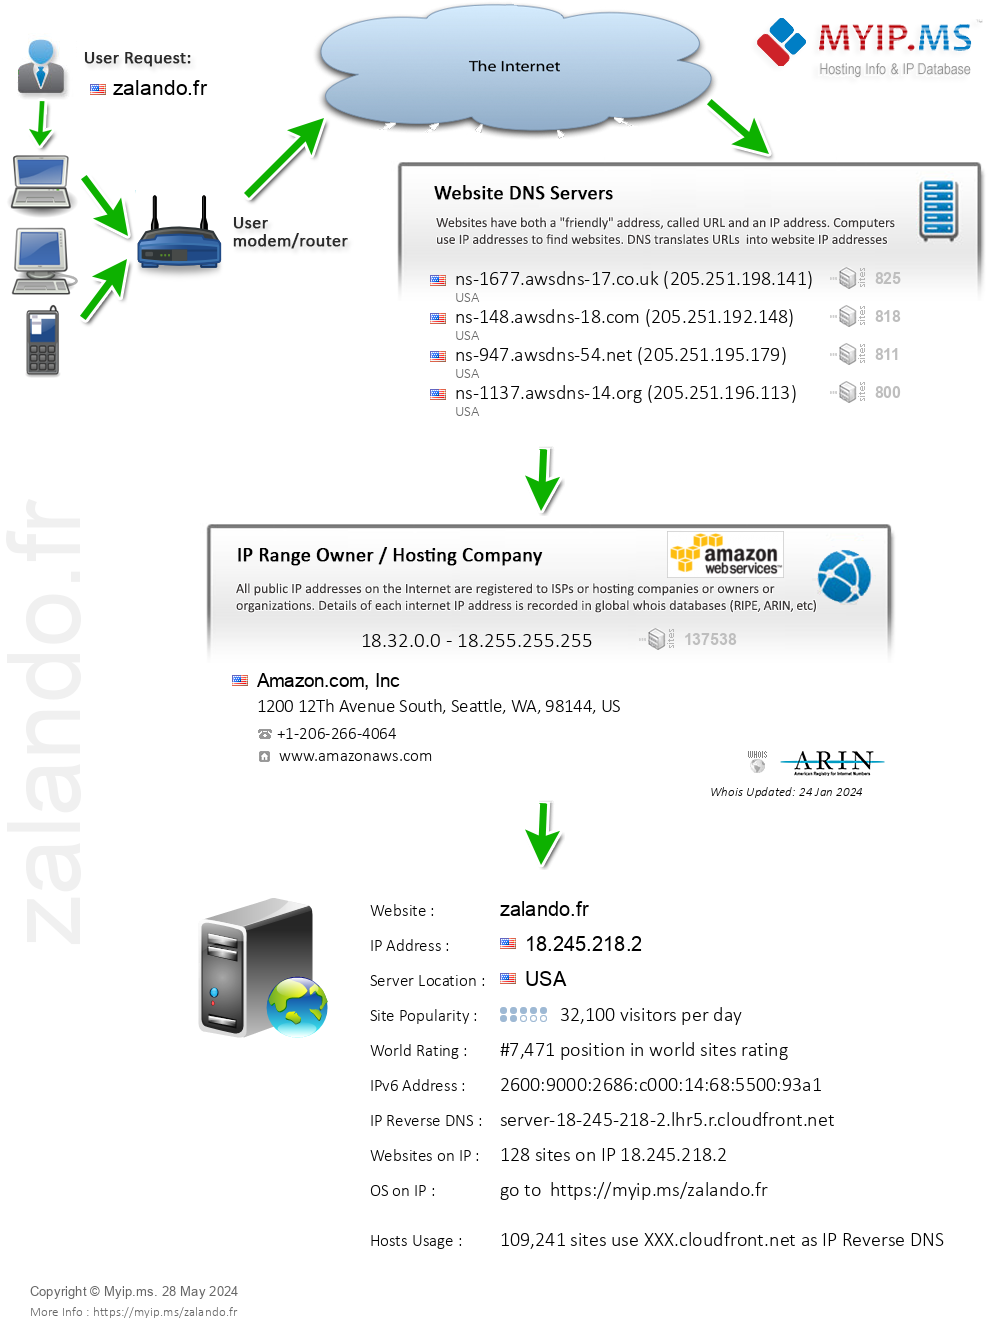 Zalando.fr - Website Hosting Visual IP Diagram